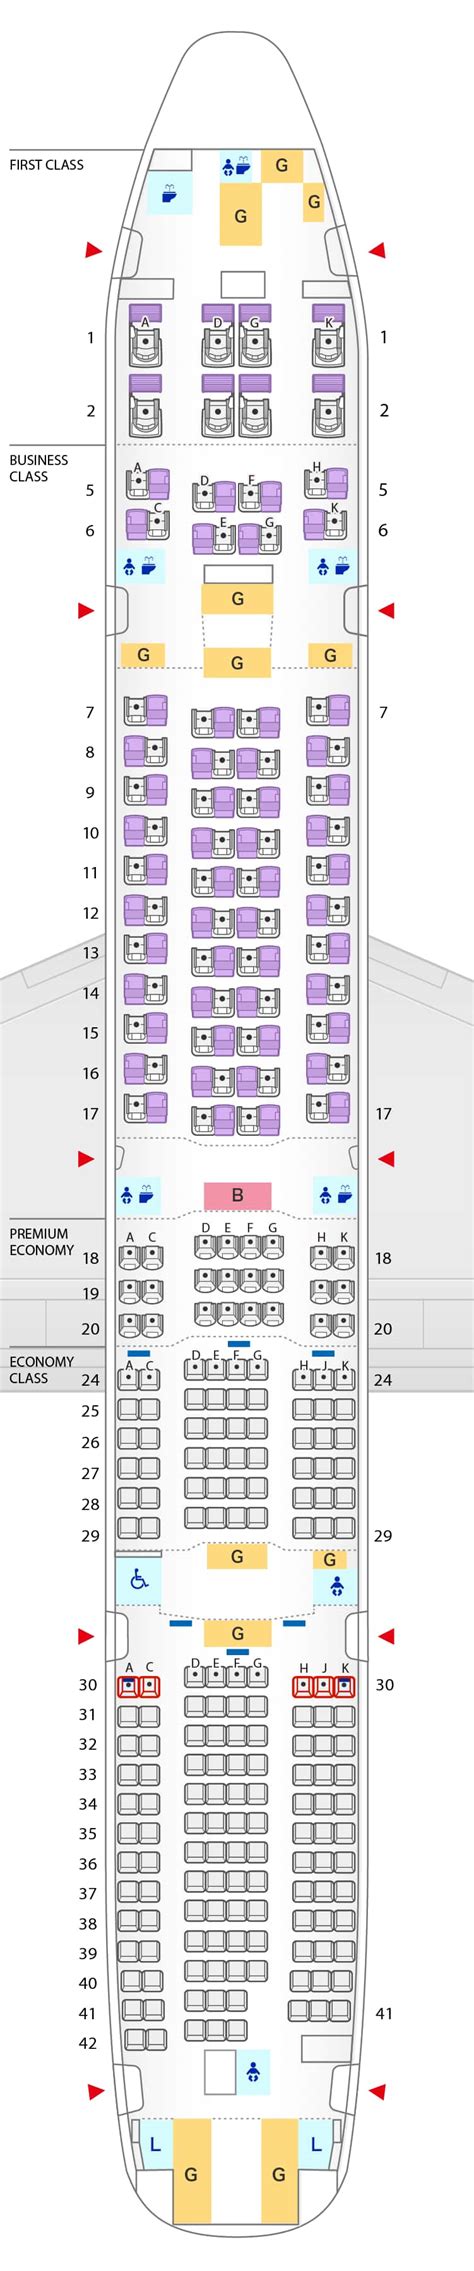 More Delta Air Lines Seat Maps. Delta Air Lines MD90. Delta Air Lin